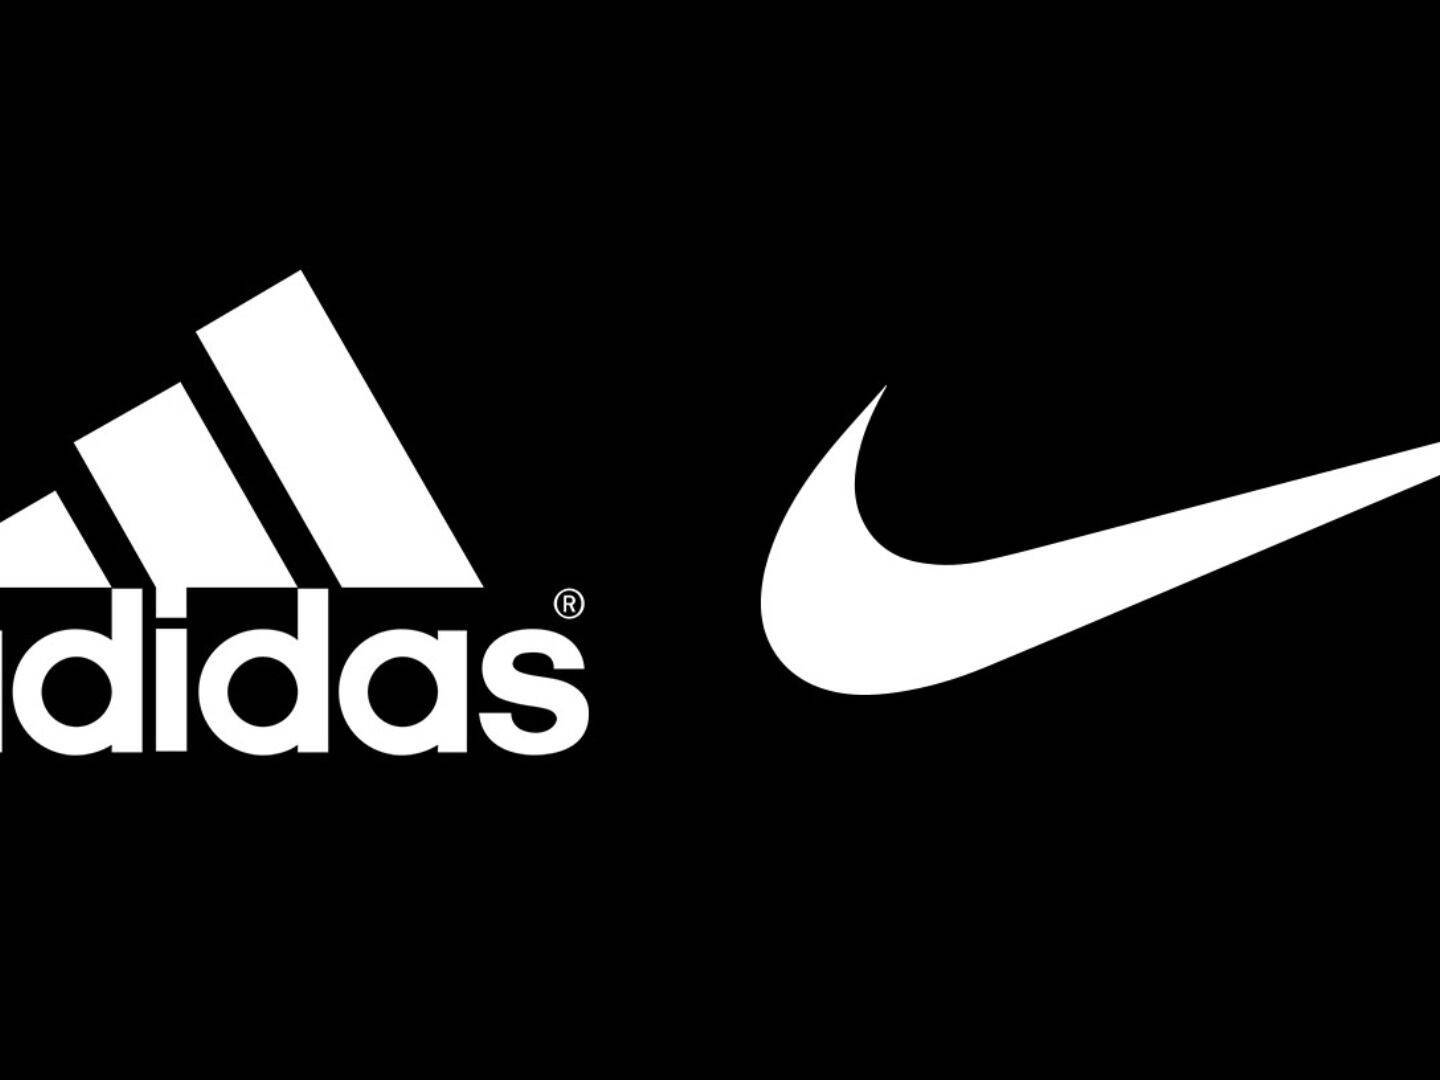 es el origen de la marca de zapatos Adidas y su eterna rivalidad con Nike - Vandal Random